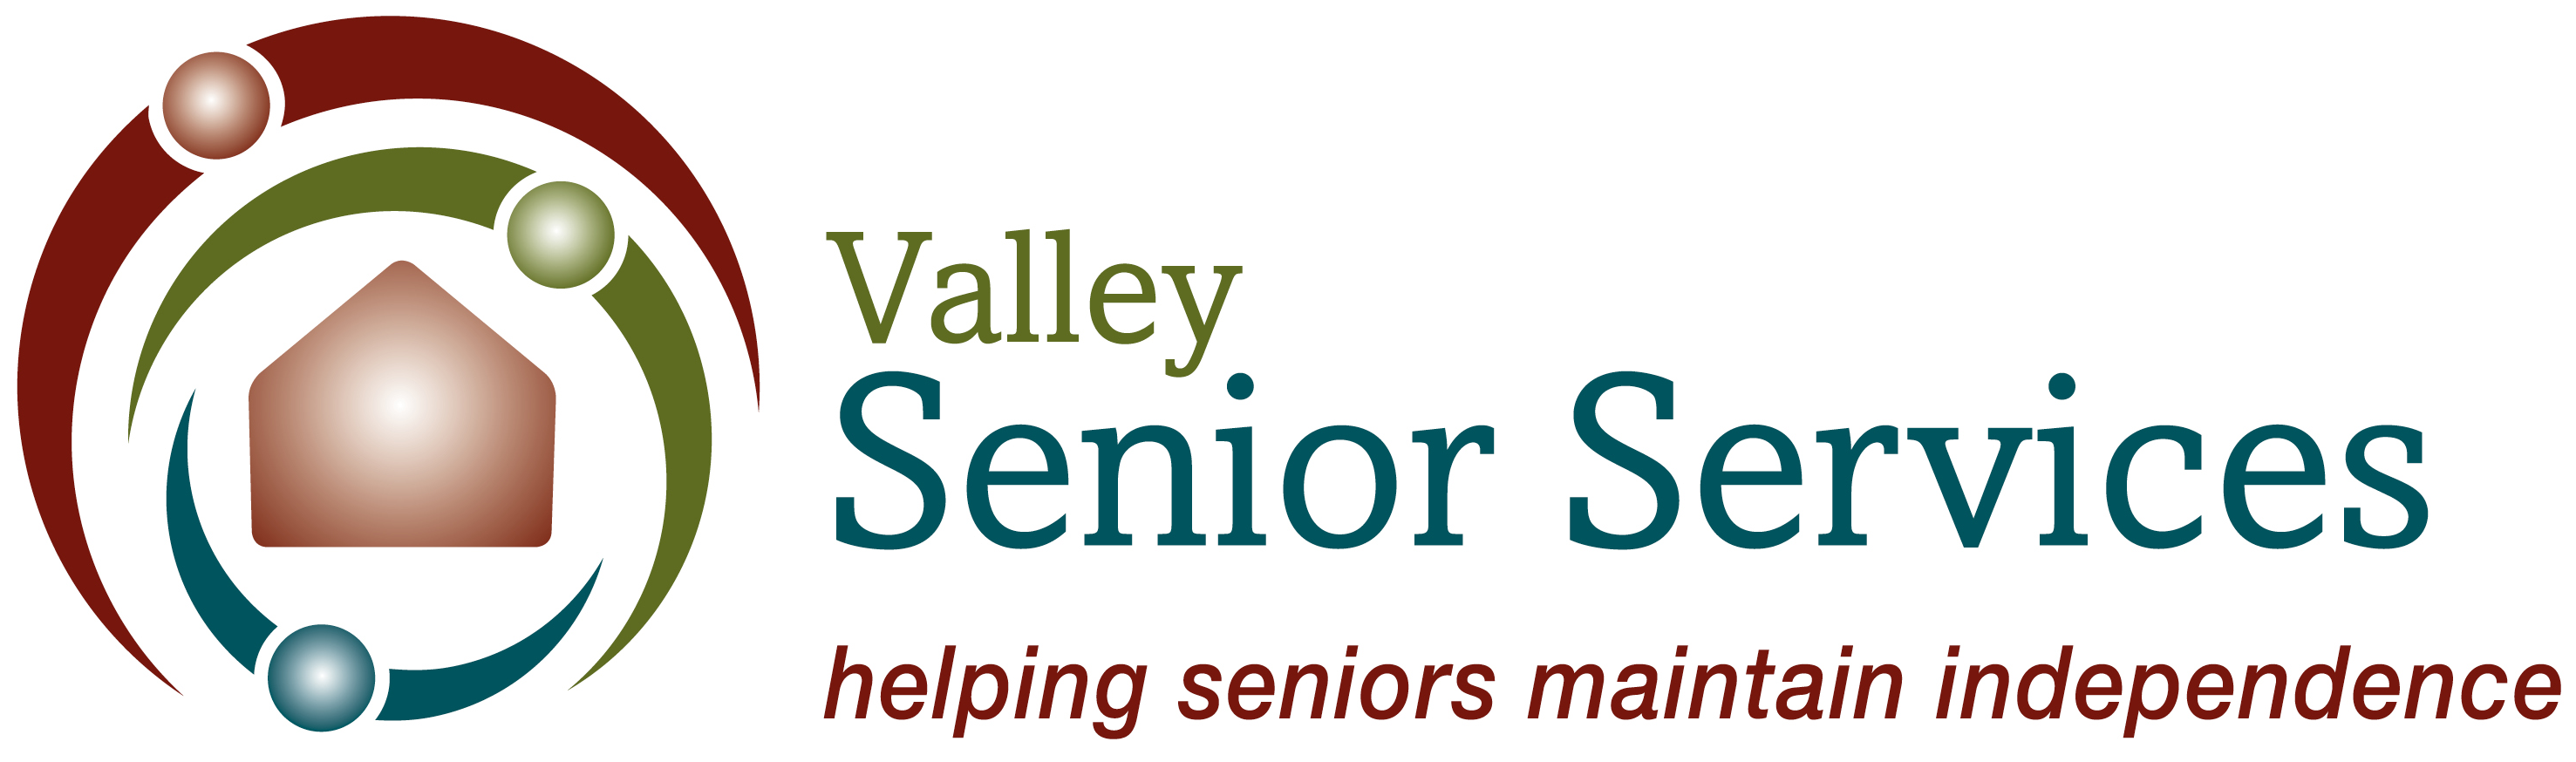 Valley Senior Services - Logo